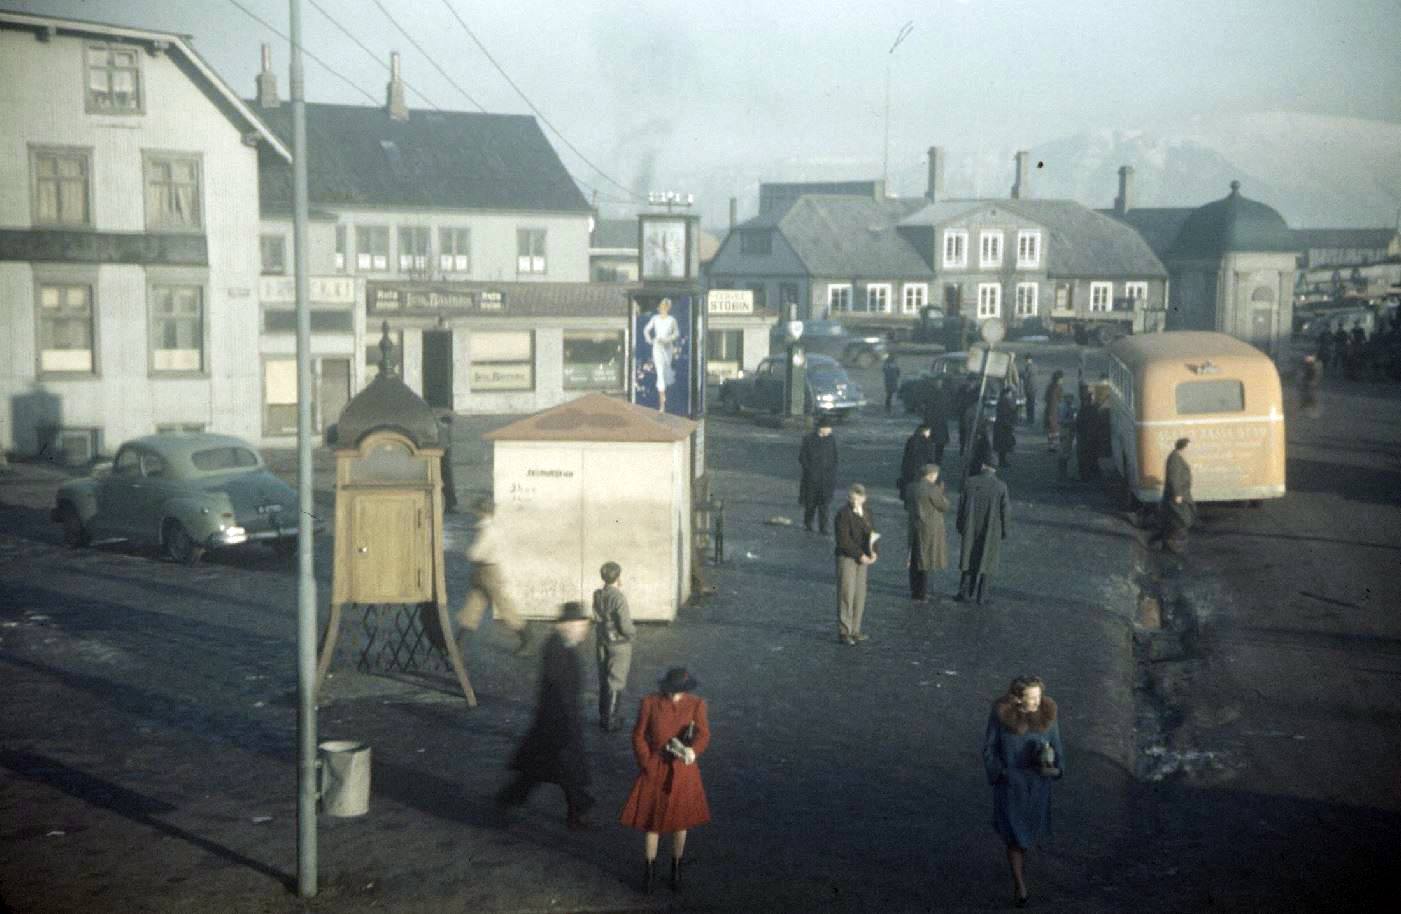 1943-44. Американцы в Исландии